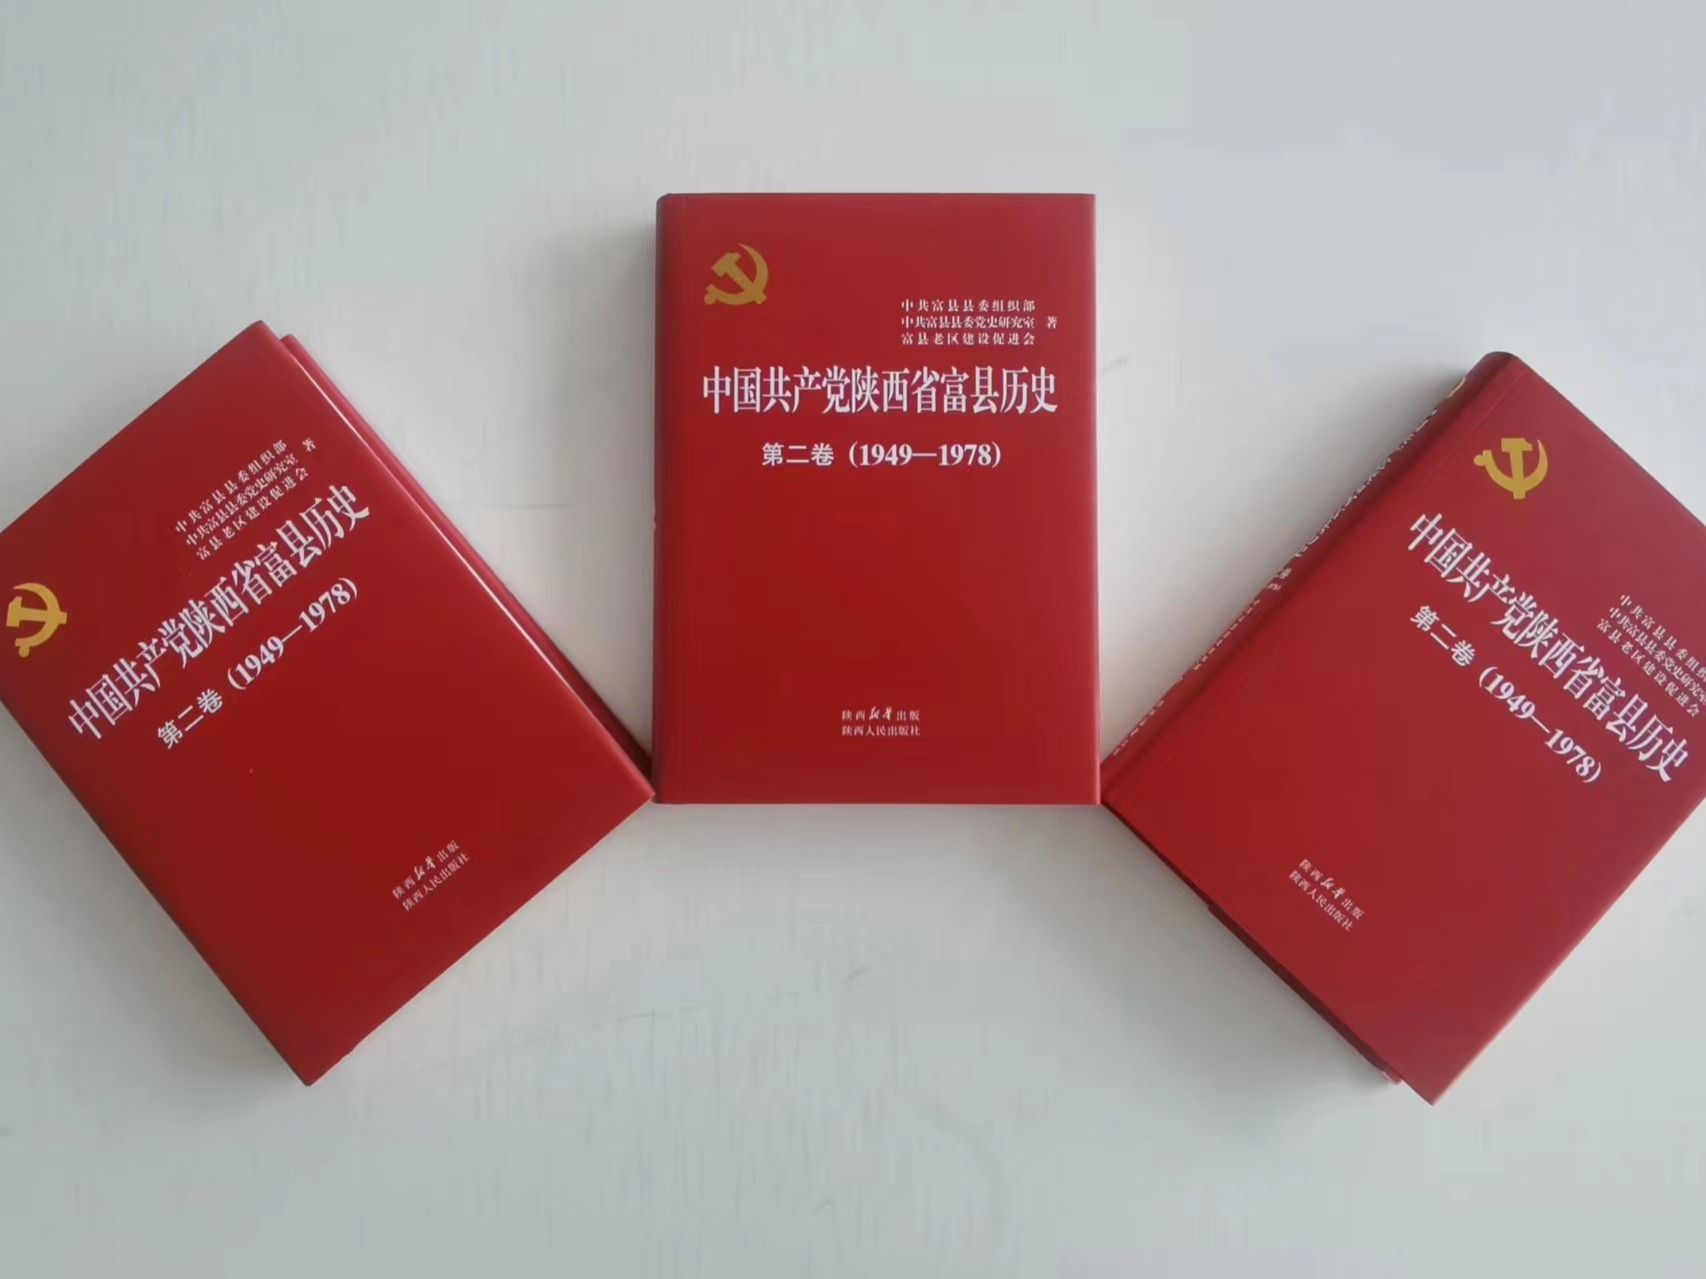 《中国共产党陕西省富县历史》第二卷（1949-1978）正式出版发行